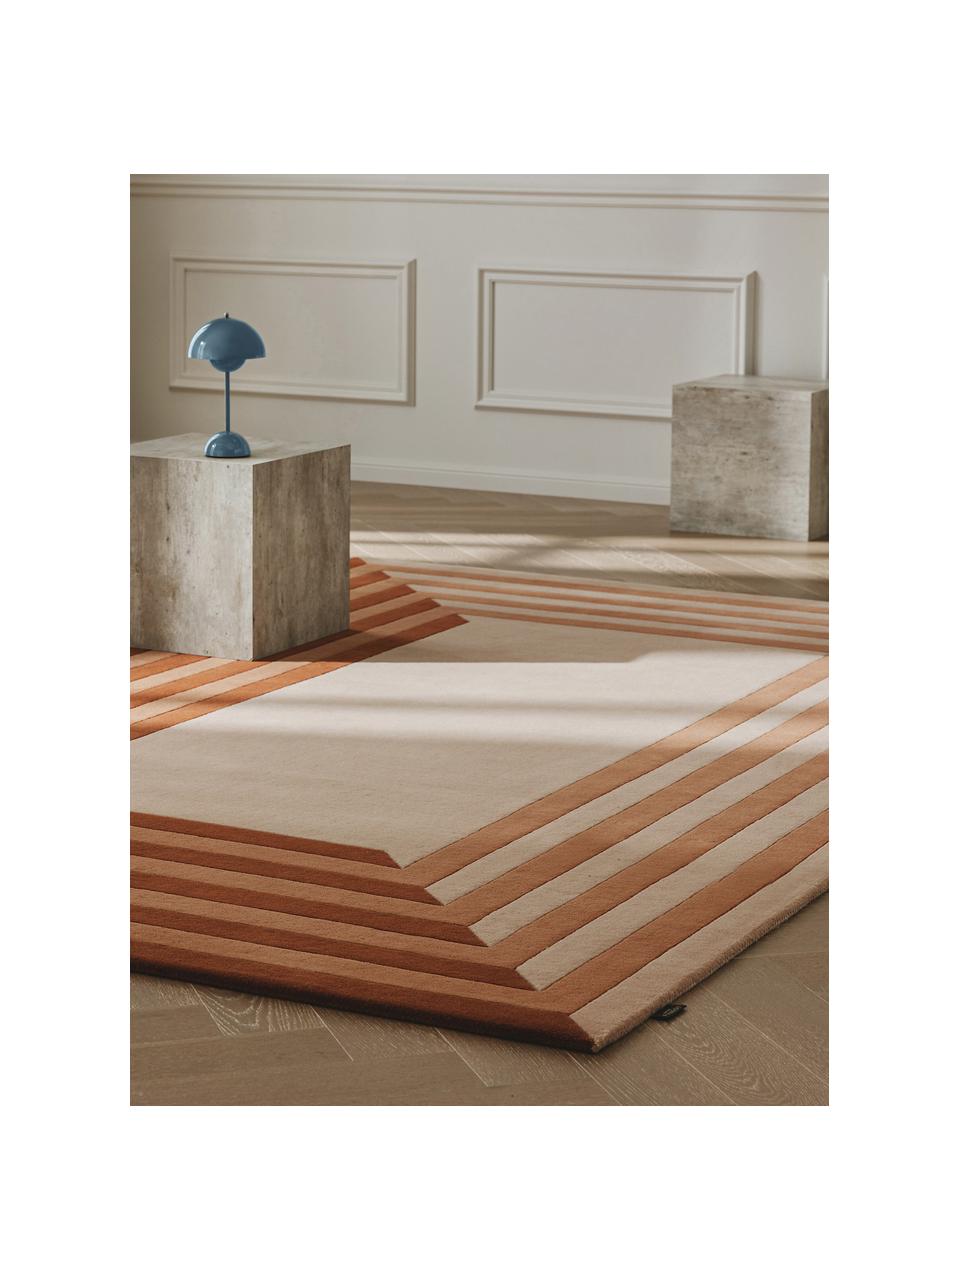 Ručne tuftovaný vlnený koberec Tilo, 100 % vlna

V prvých týždňoch používania môžu vlnené koberce uvoľňovať vlákna, tento jav zmizne po niekoľkých týždňoch používania, Terakotová, Ø 160 x V 230 cm (veľkosť XL)